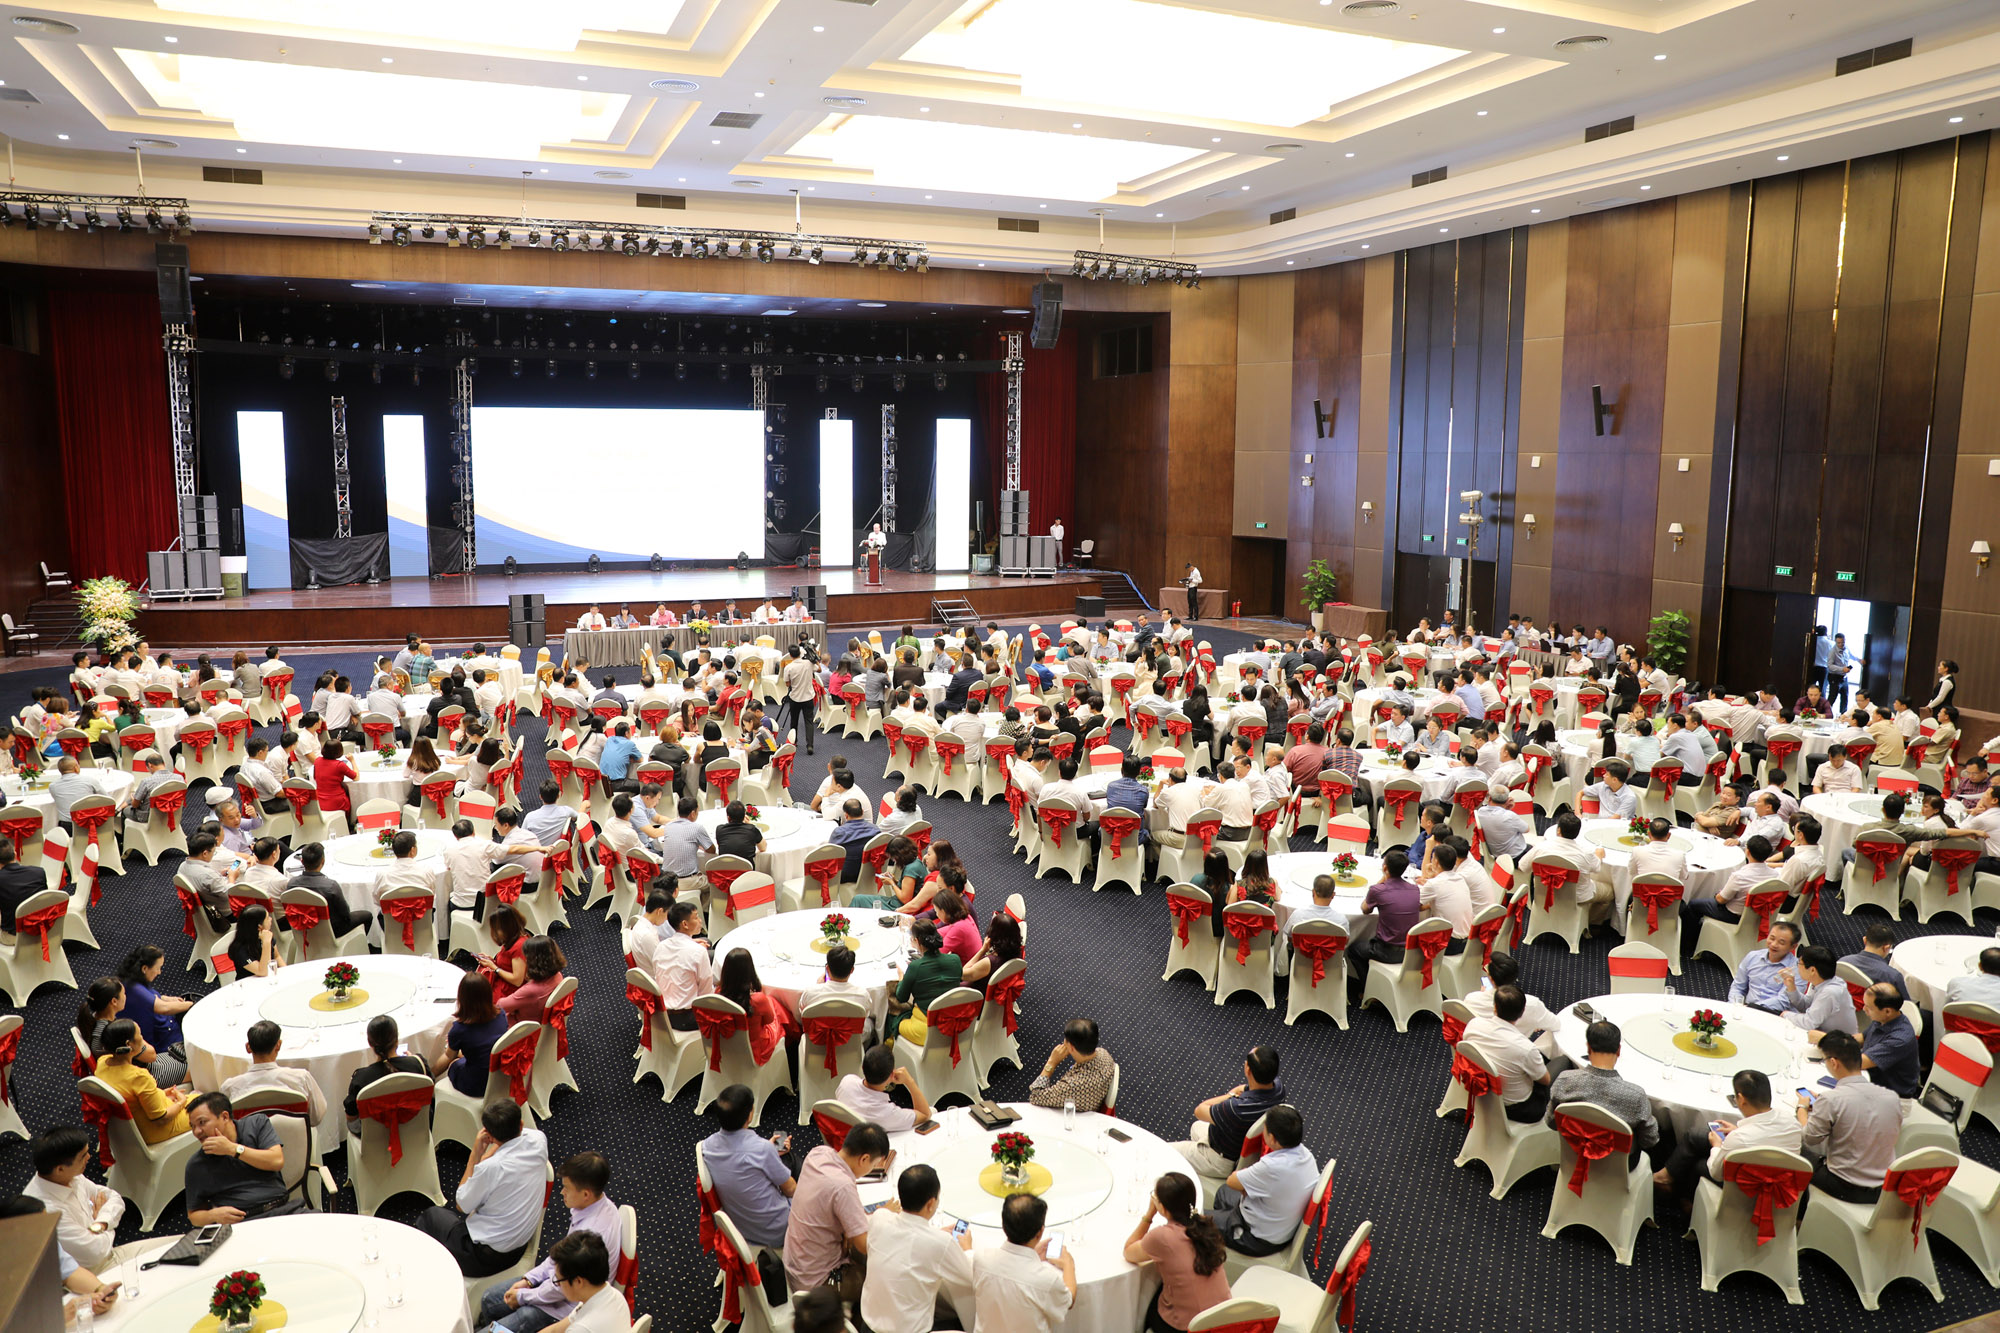 Tỉnh Quảng Ninh tổ chức Hội nghị Tiếp xúc doanh nghiệp quý III/2019 để tháo gỡ khó khăn cho doanh nghiệp.